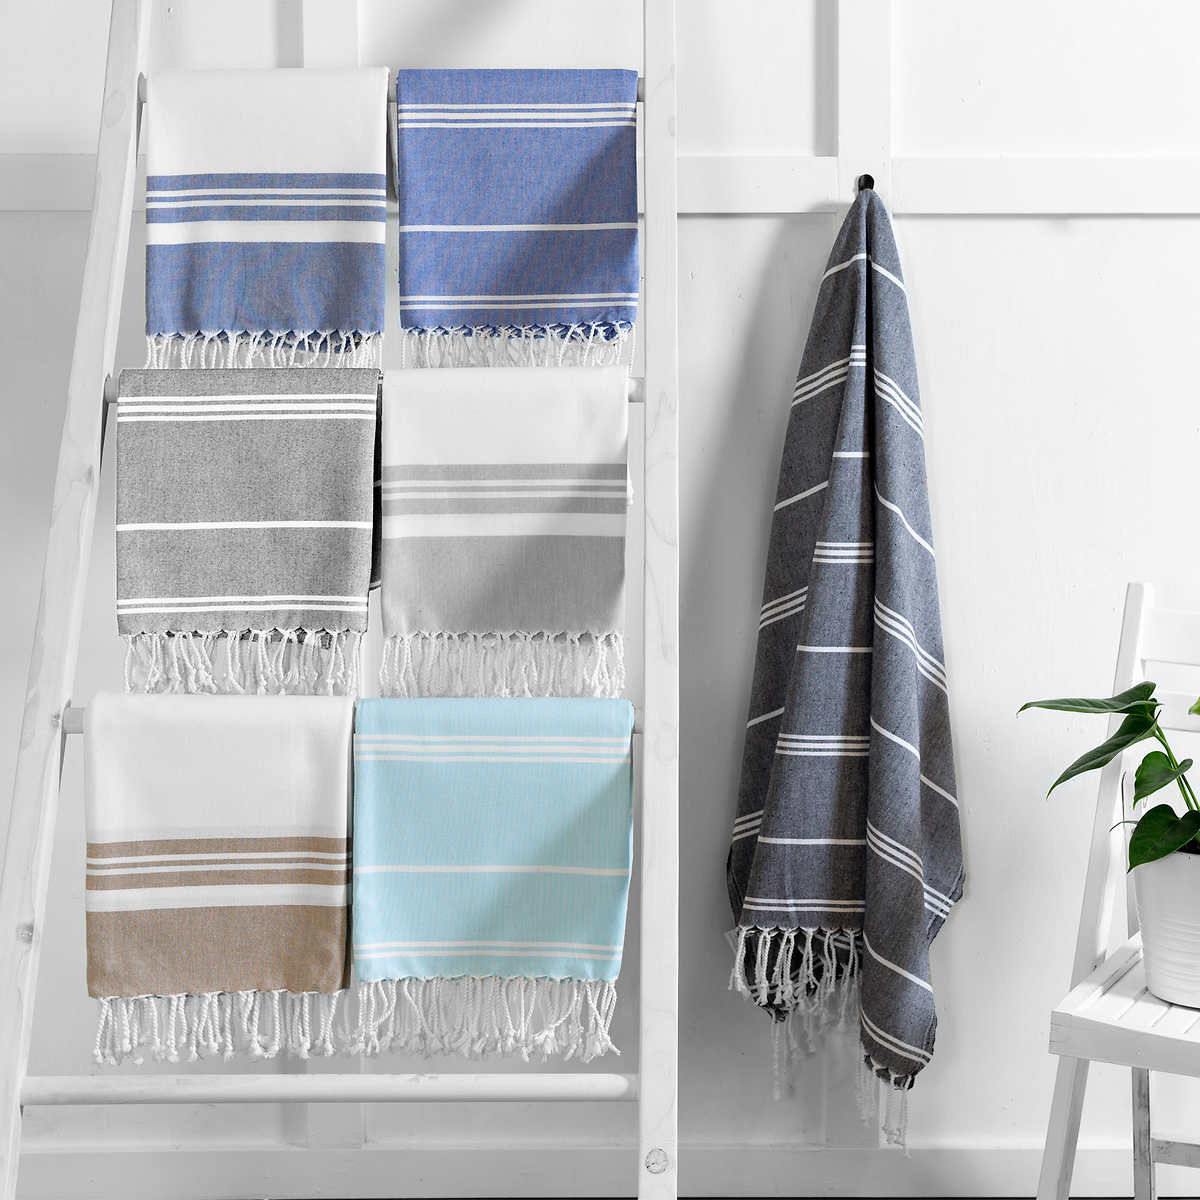 Turkish Towel - Gentle Planet 12-piece Washcloth Set